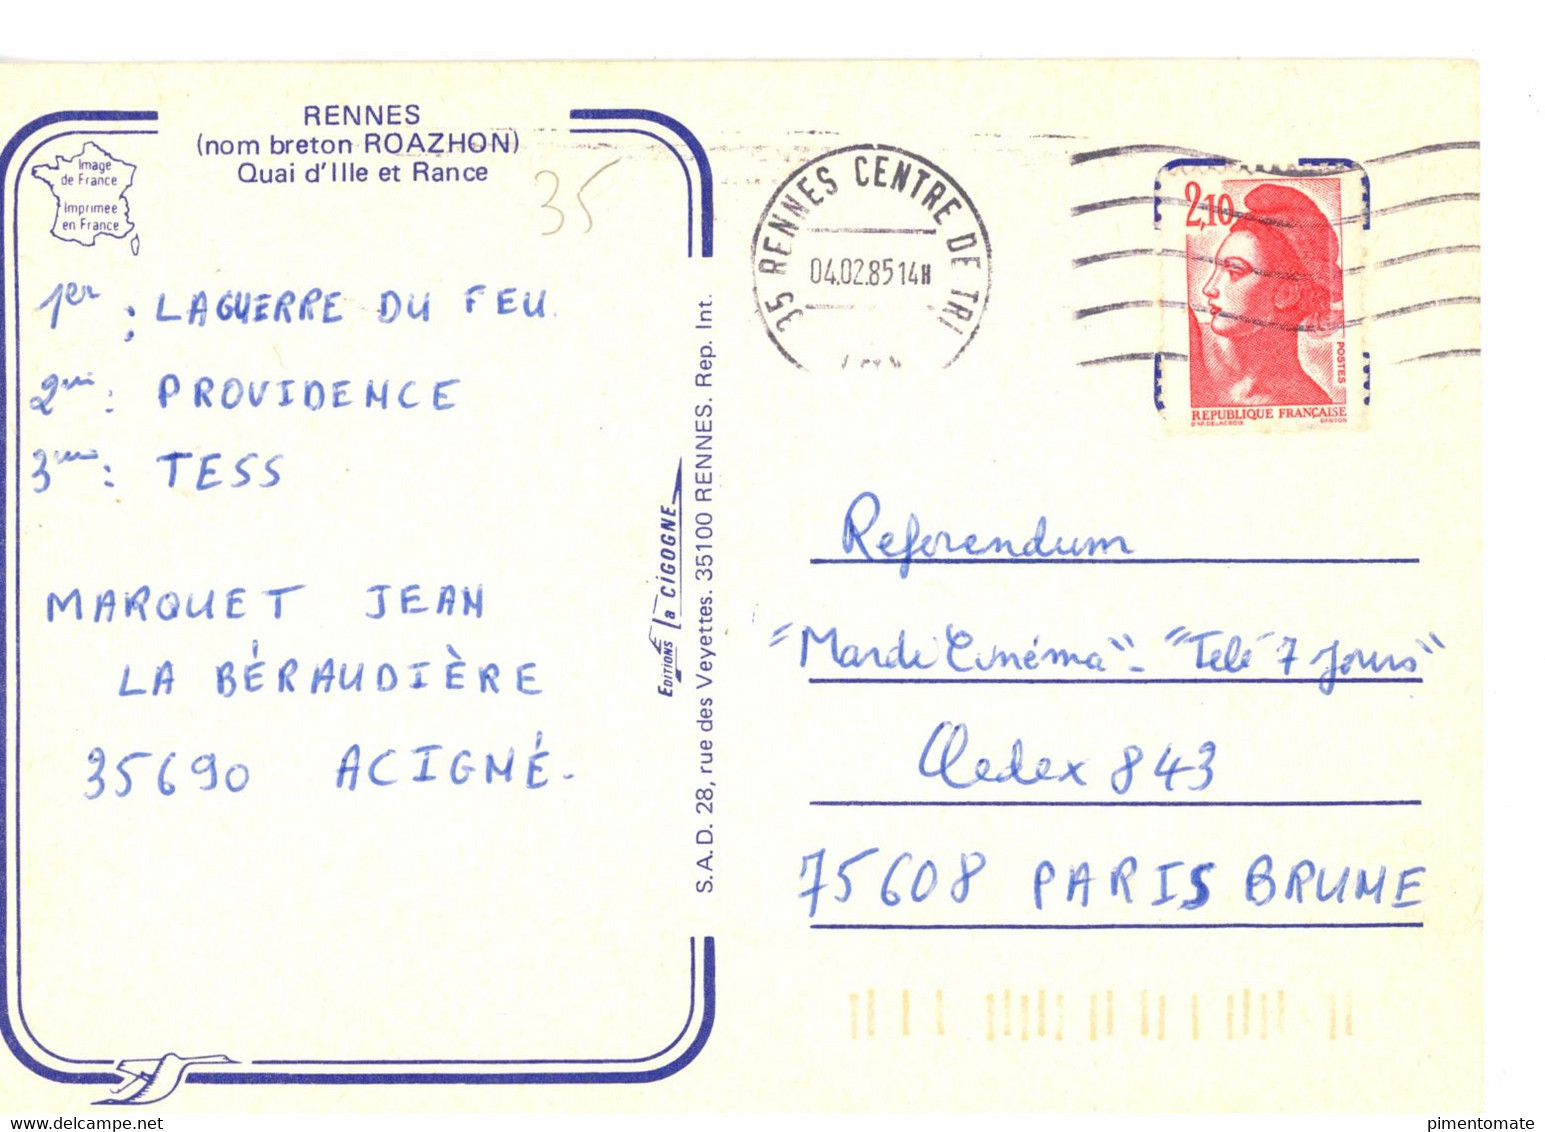 RENNES QUAI D'ILLE ET RANCE ECLUSE 1985 - Rennes